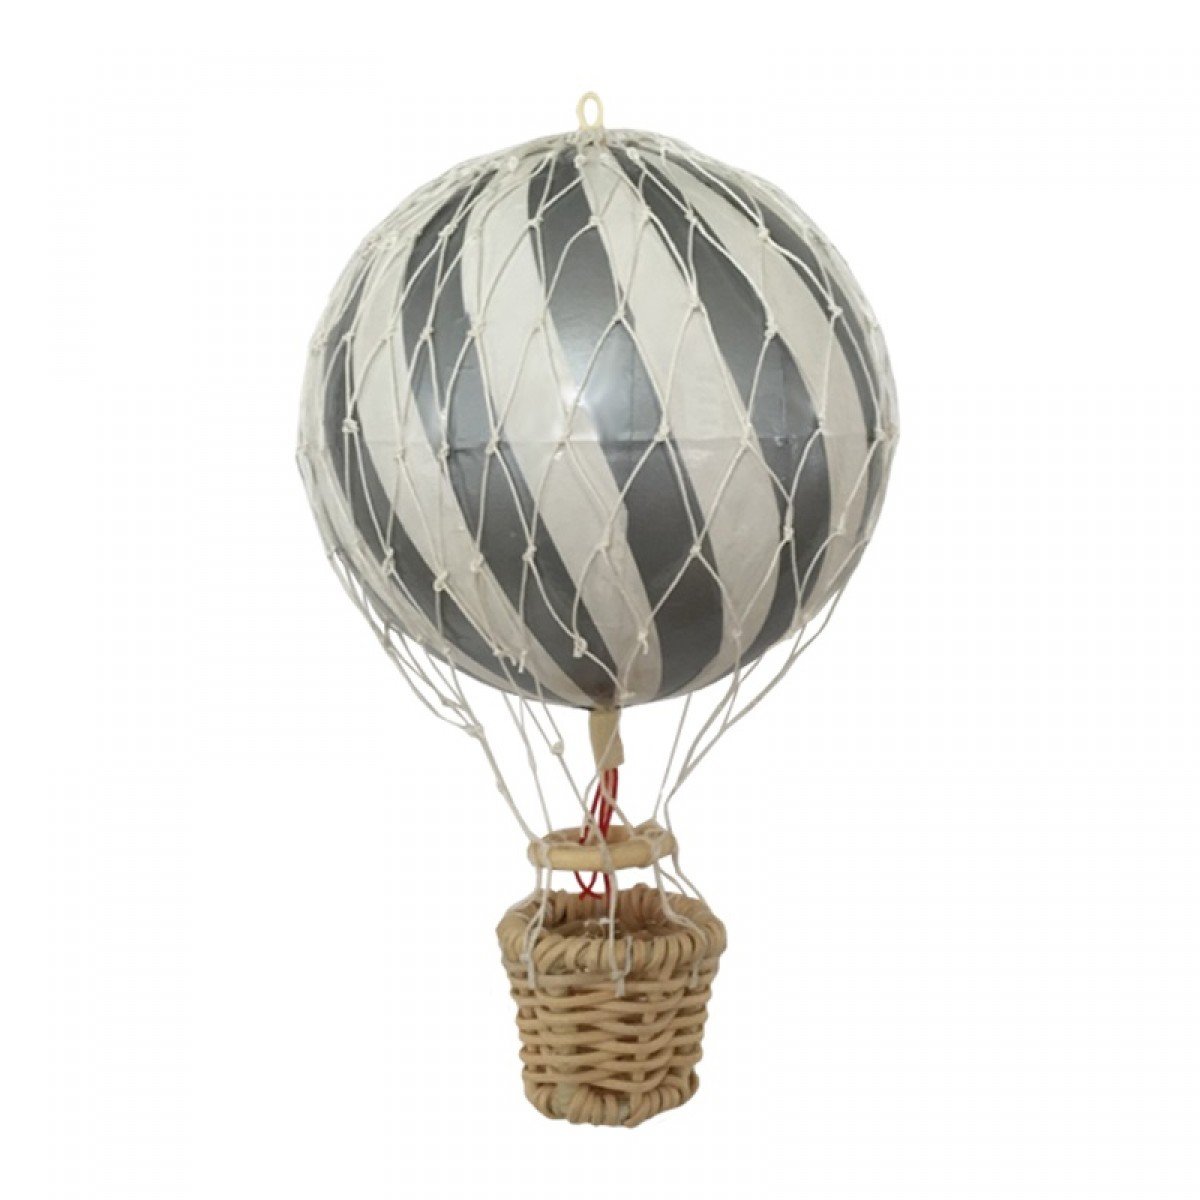 Трос воздушного шара. Декоративный воздушный шар. Корзинка для воздушного шара. Игрушечный воздушный шар с корзиной. Сетка для воздушного шара.